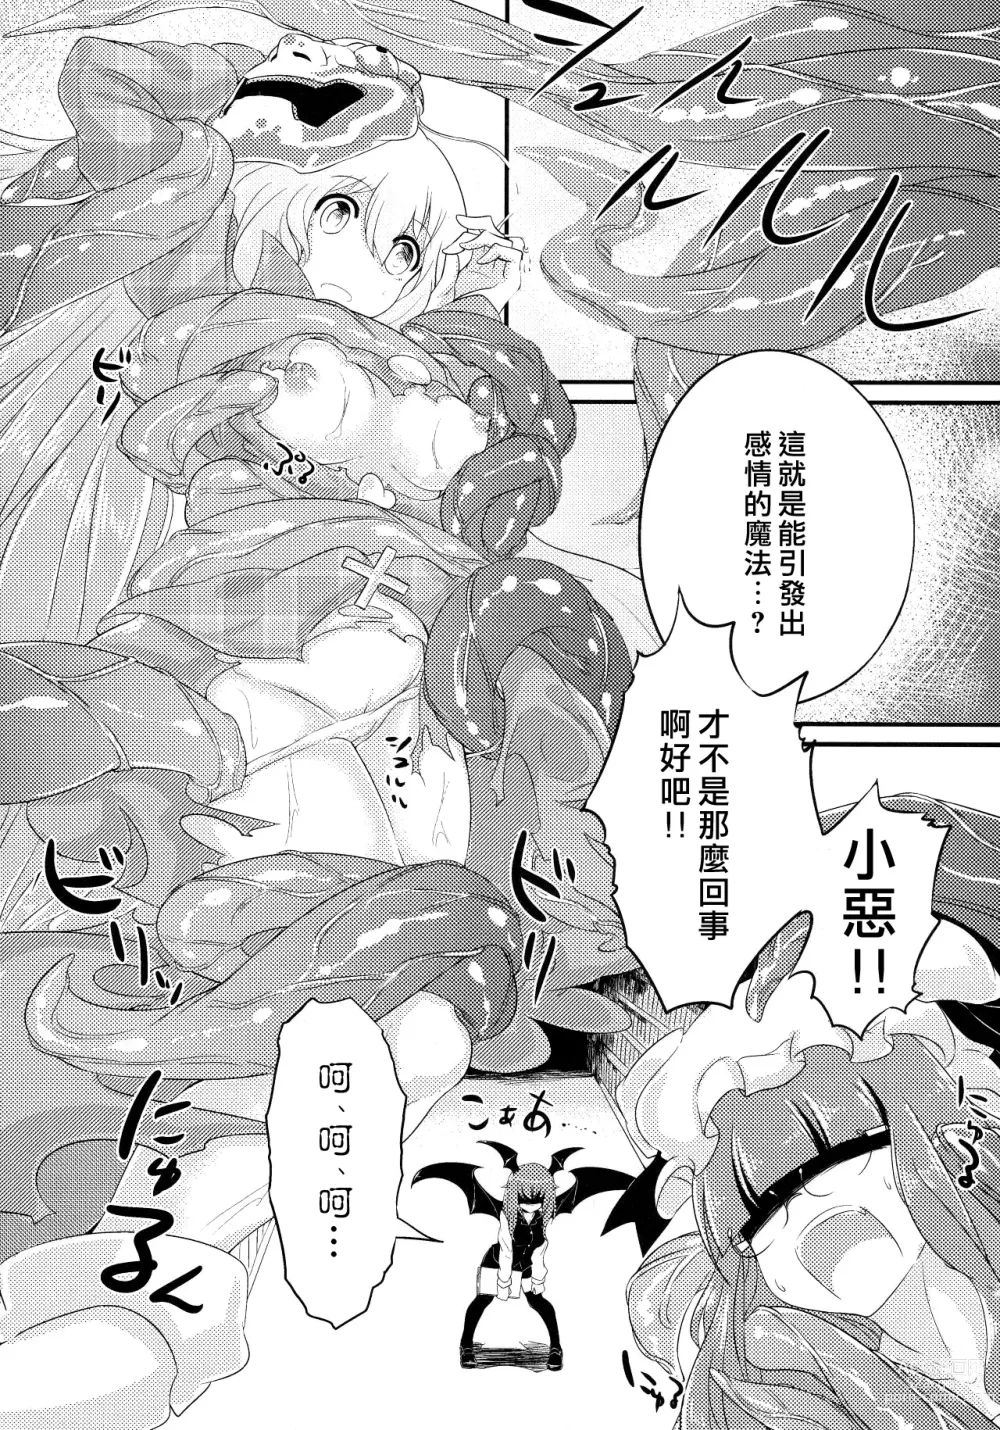 Page 24 of doujinshi Kokorozukuri